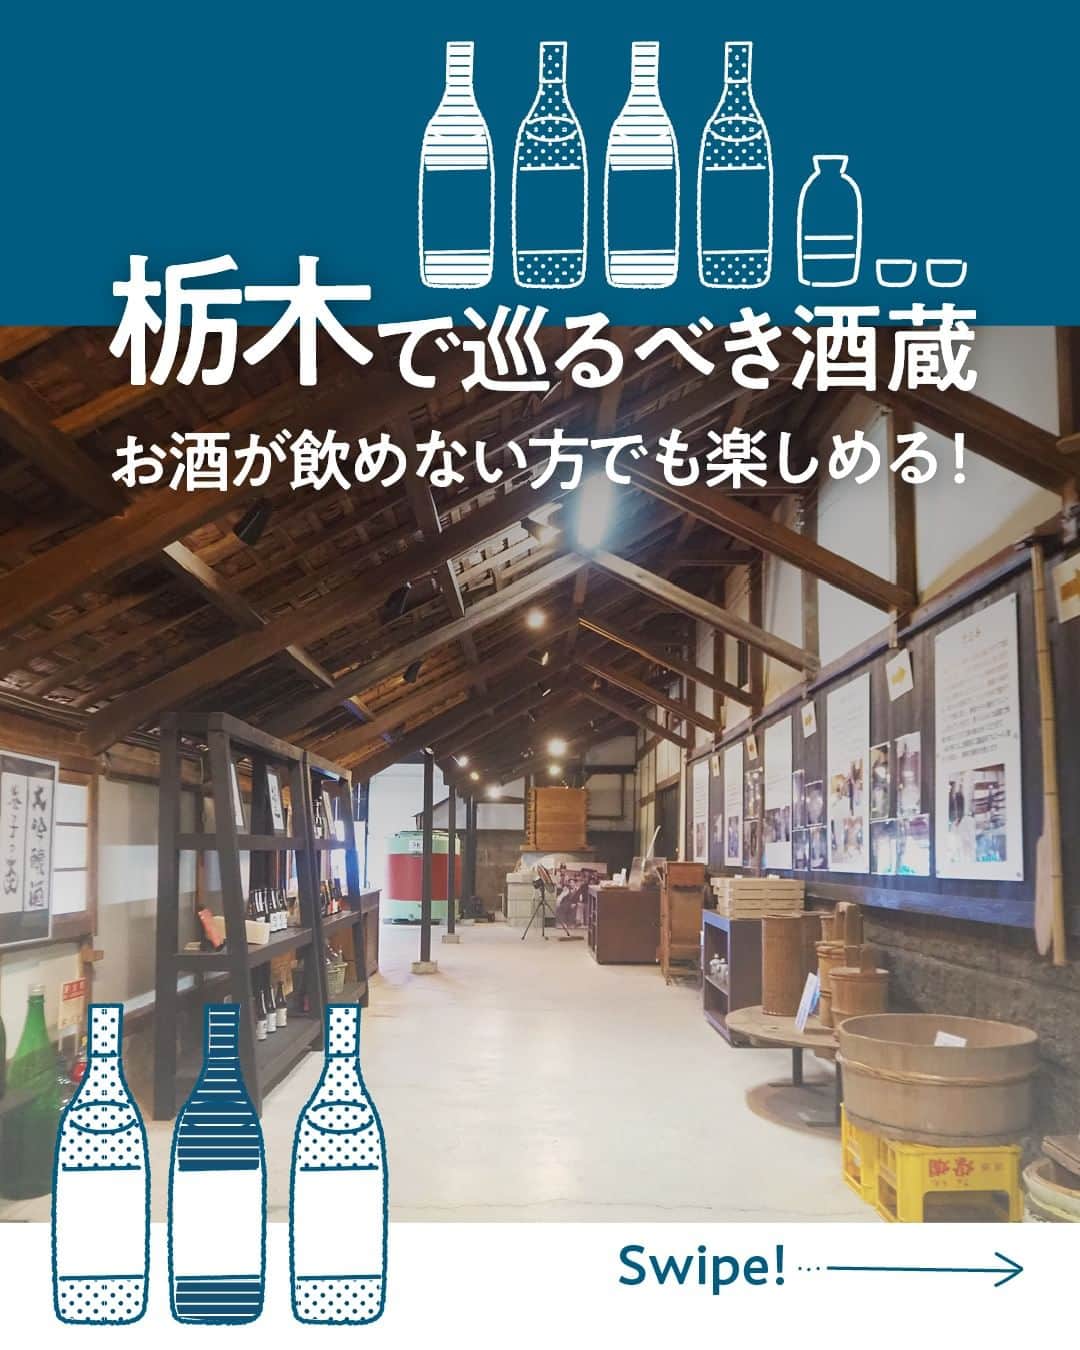 現地発信の旅行サイト「たびらい」のインスタグラム：「美しい水が湧き出る栃木県で、ぜひ体験してもらいたいのが酒蔵めぐり。 県内には老舗の酒蔵がたくさんありますよ🍶  個性豊かな酒蔵も多く、お酒を飲めない方やドライバーの方でも楽しめる魅力が満載です！  日本酒の新しい魅力を知れる酒蔵巡りを、ぜひ栃木観光の計画に加えてみてくださいね！  ▼ほかの投稿はこちらから📷 @tabirai   #酒蔵 #日本酒 #外池酒造店 #益子 #島崎酒造 #那須烏山 #第一酒造 #佐野 #栃木 #たびらい #たびらいホテル #tabirai #たびらいレンタカー #tabirai_trip」